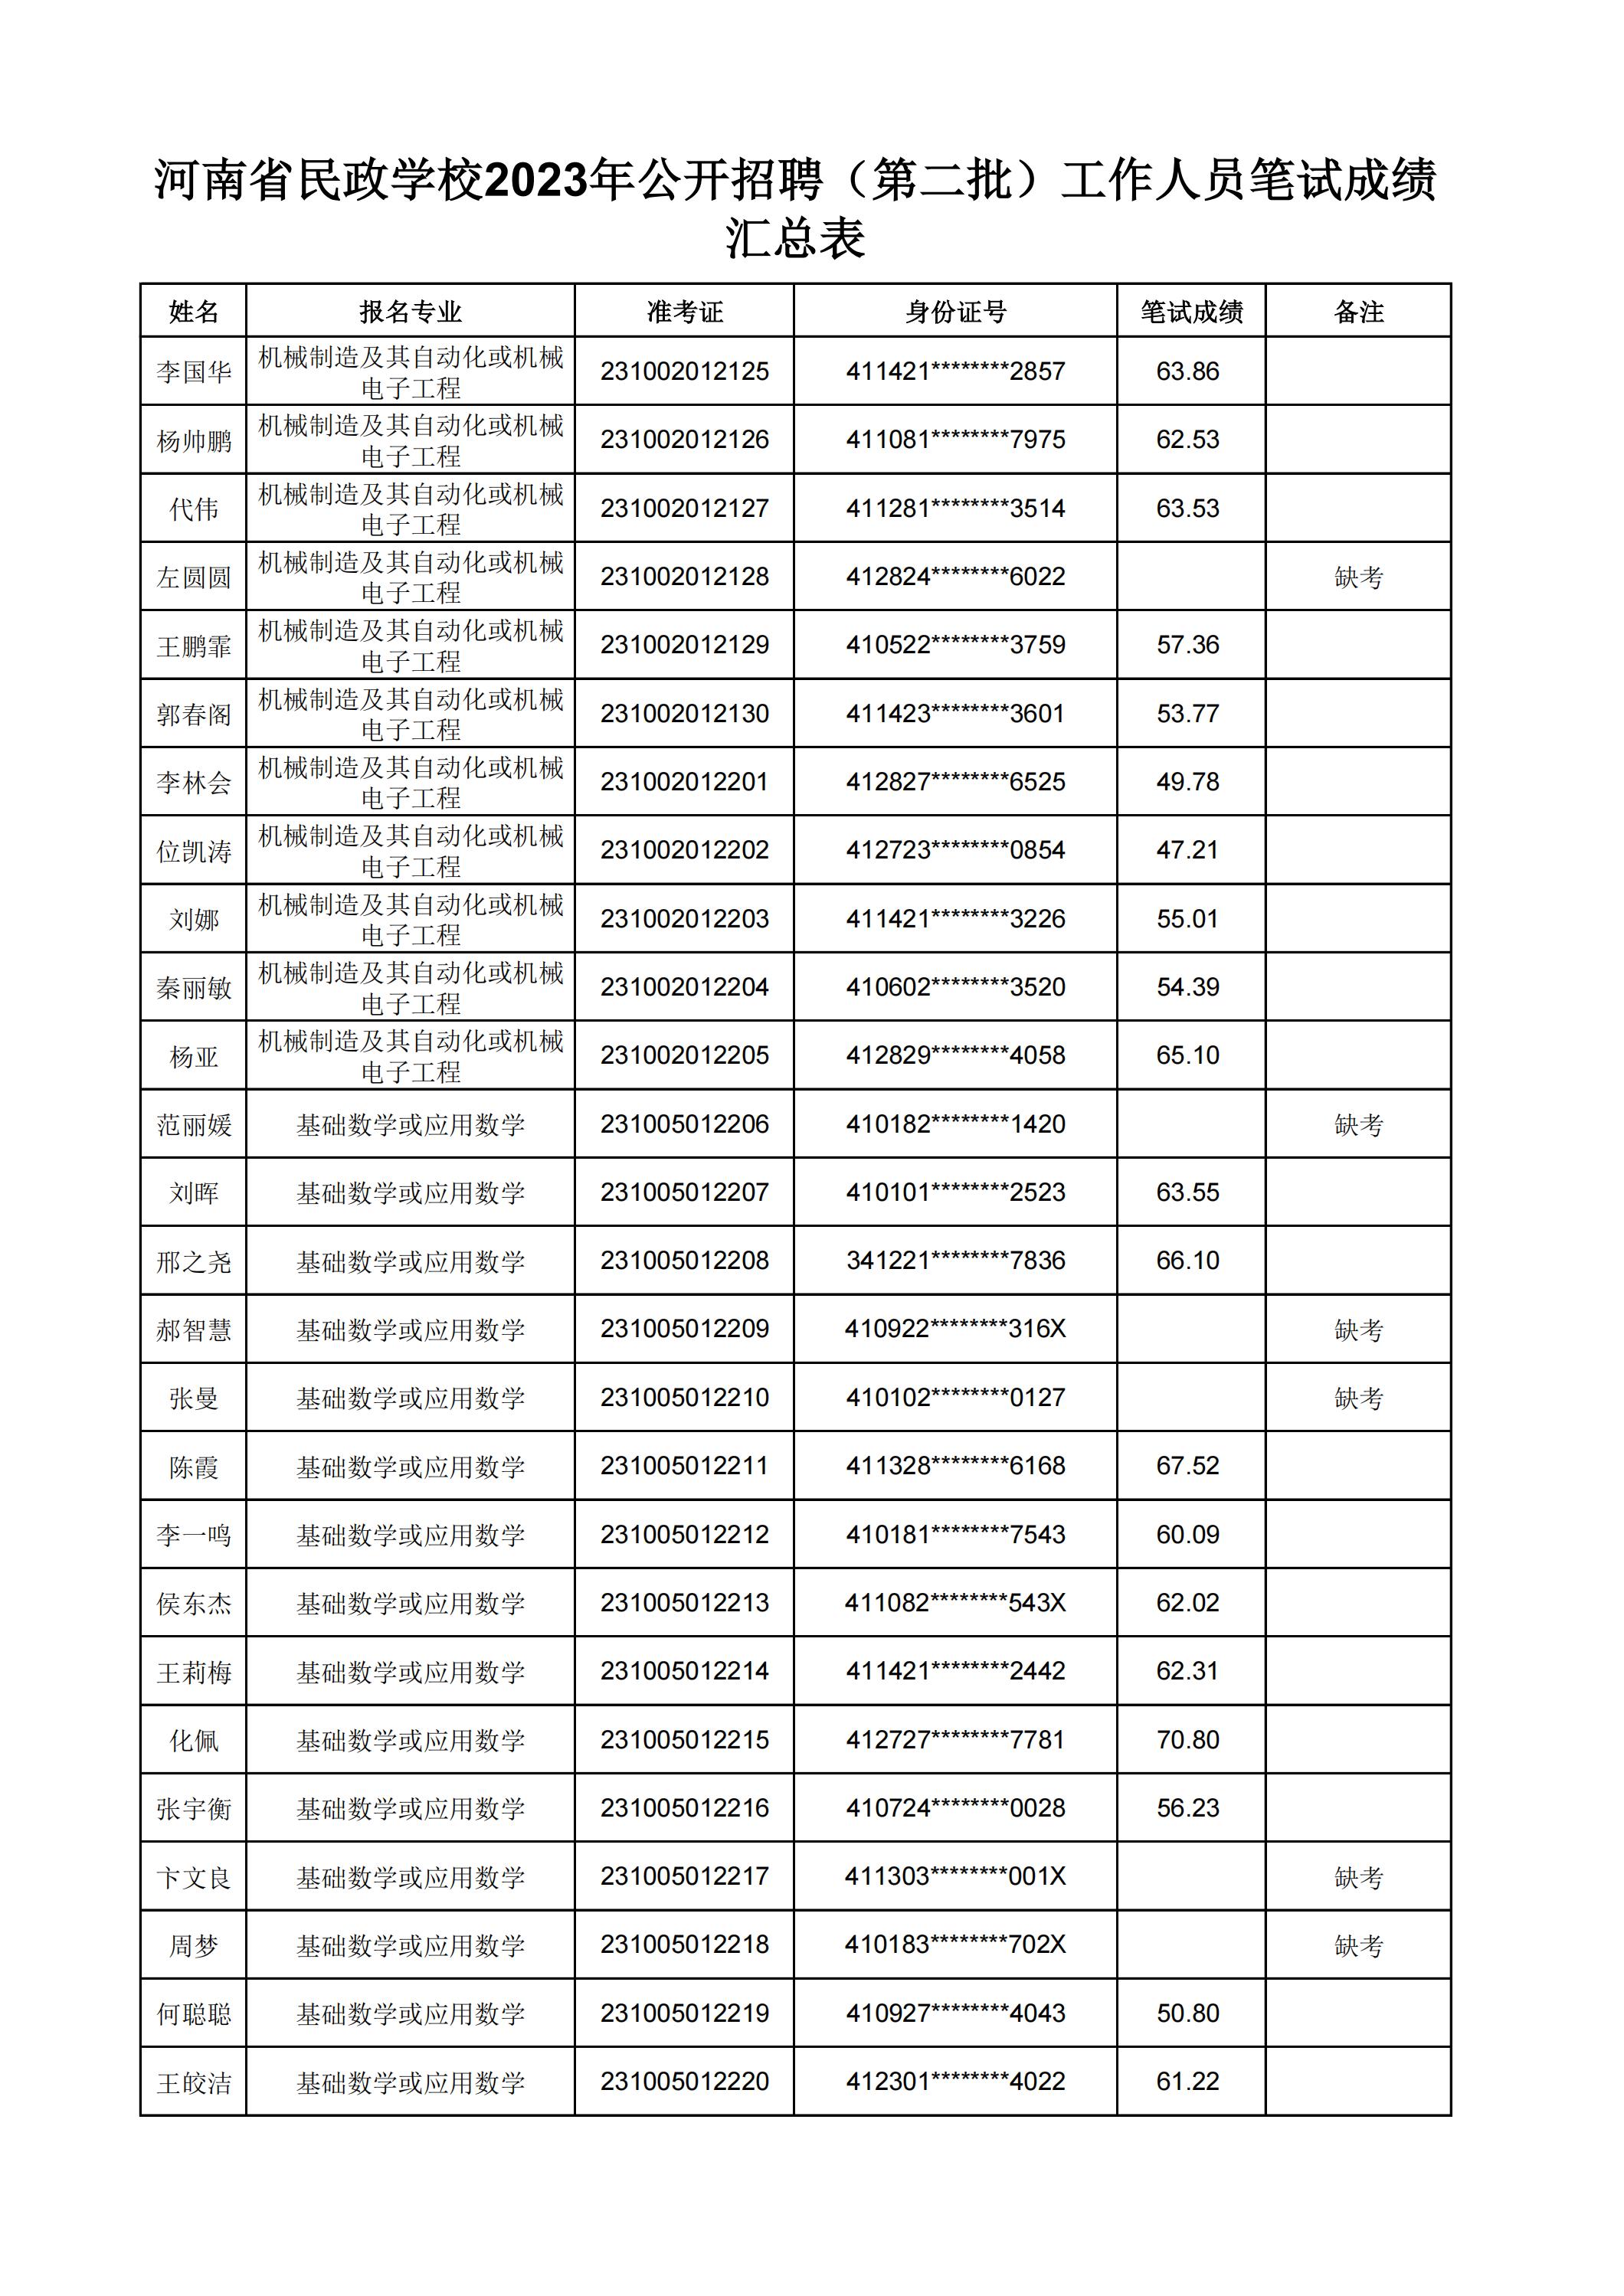 河南省民政学校2023年公开招聘（第二批）工作人员笔试成绩汇总表(2)_24.jpg